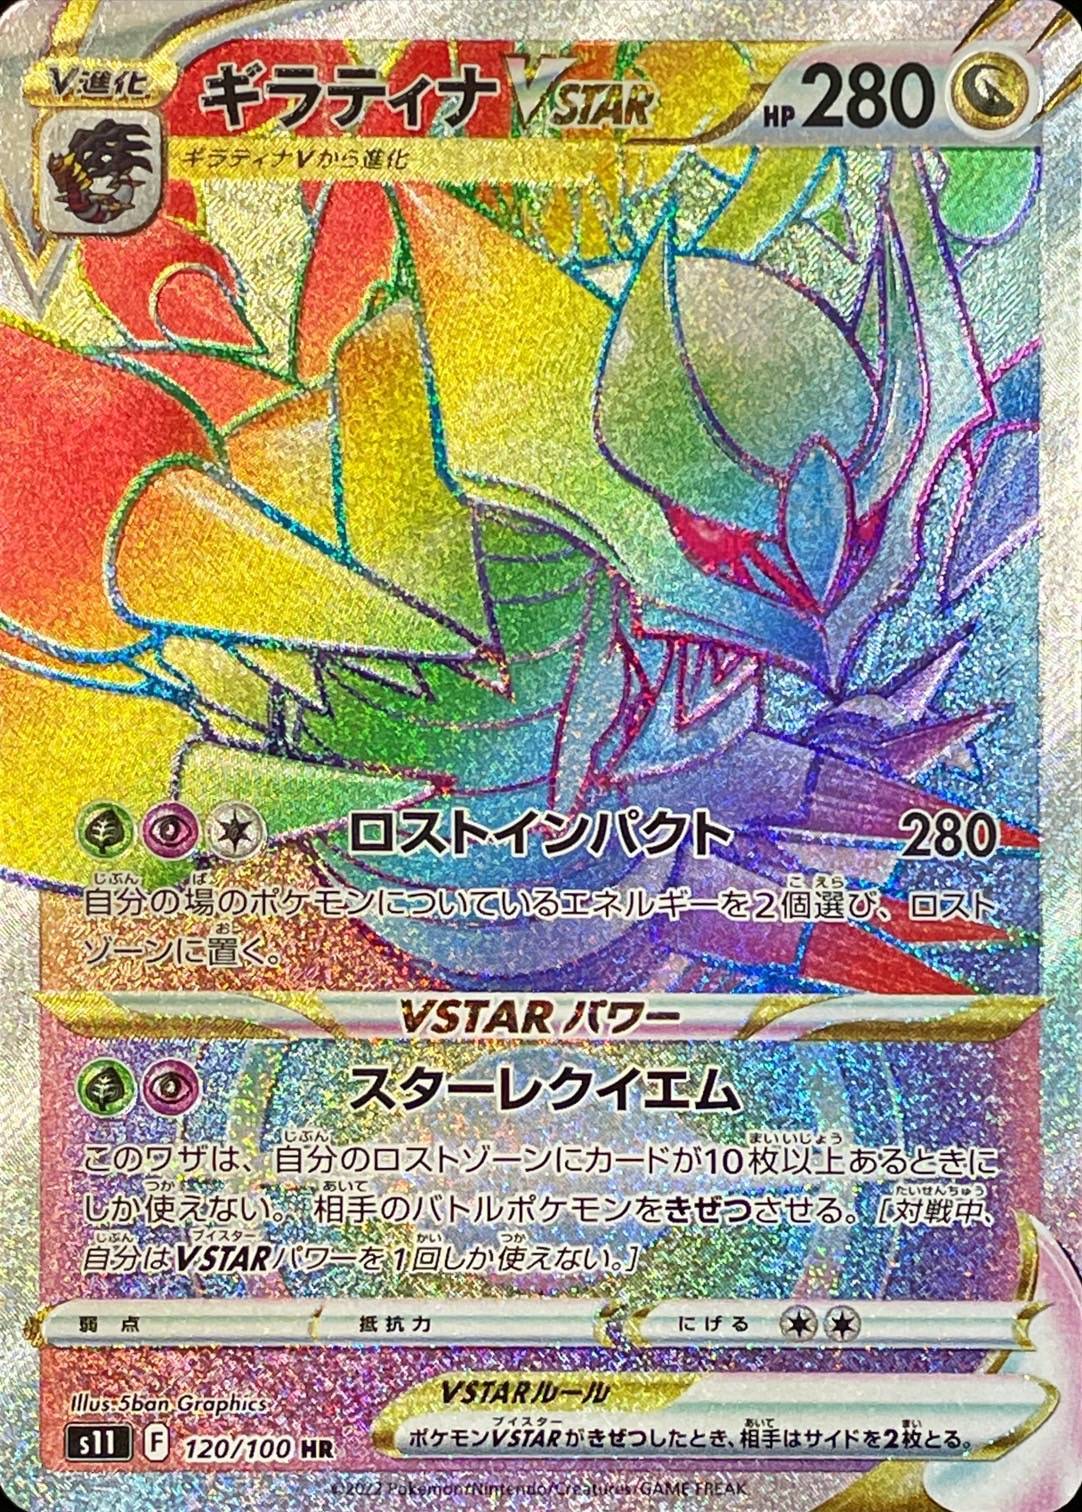 Pokemon TCG - s11 - 125/100 (UR) - Giratina VSTAR